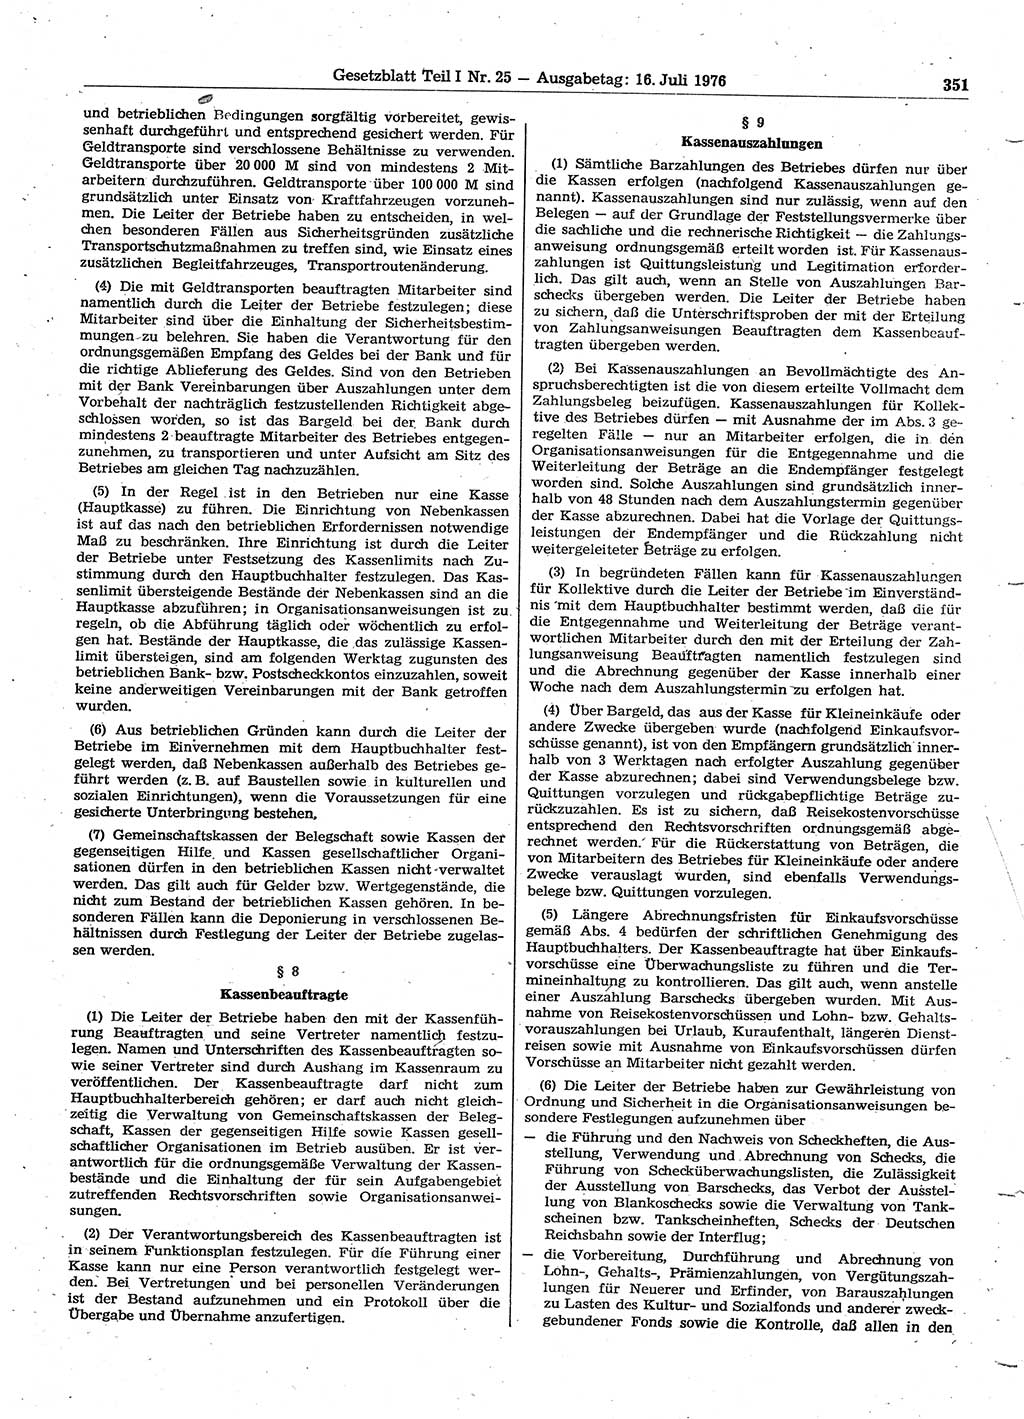 Gesetzblatt (GBl.) der Deutschen Demokratischen Republik (DDR) Teil Ⅰ 1976, Seite 351 (GBl. DDR Ⅰ 1976, S. 351)